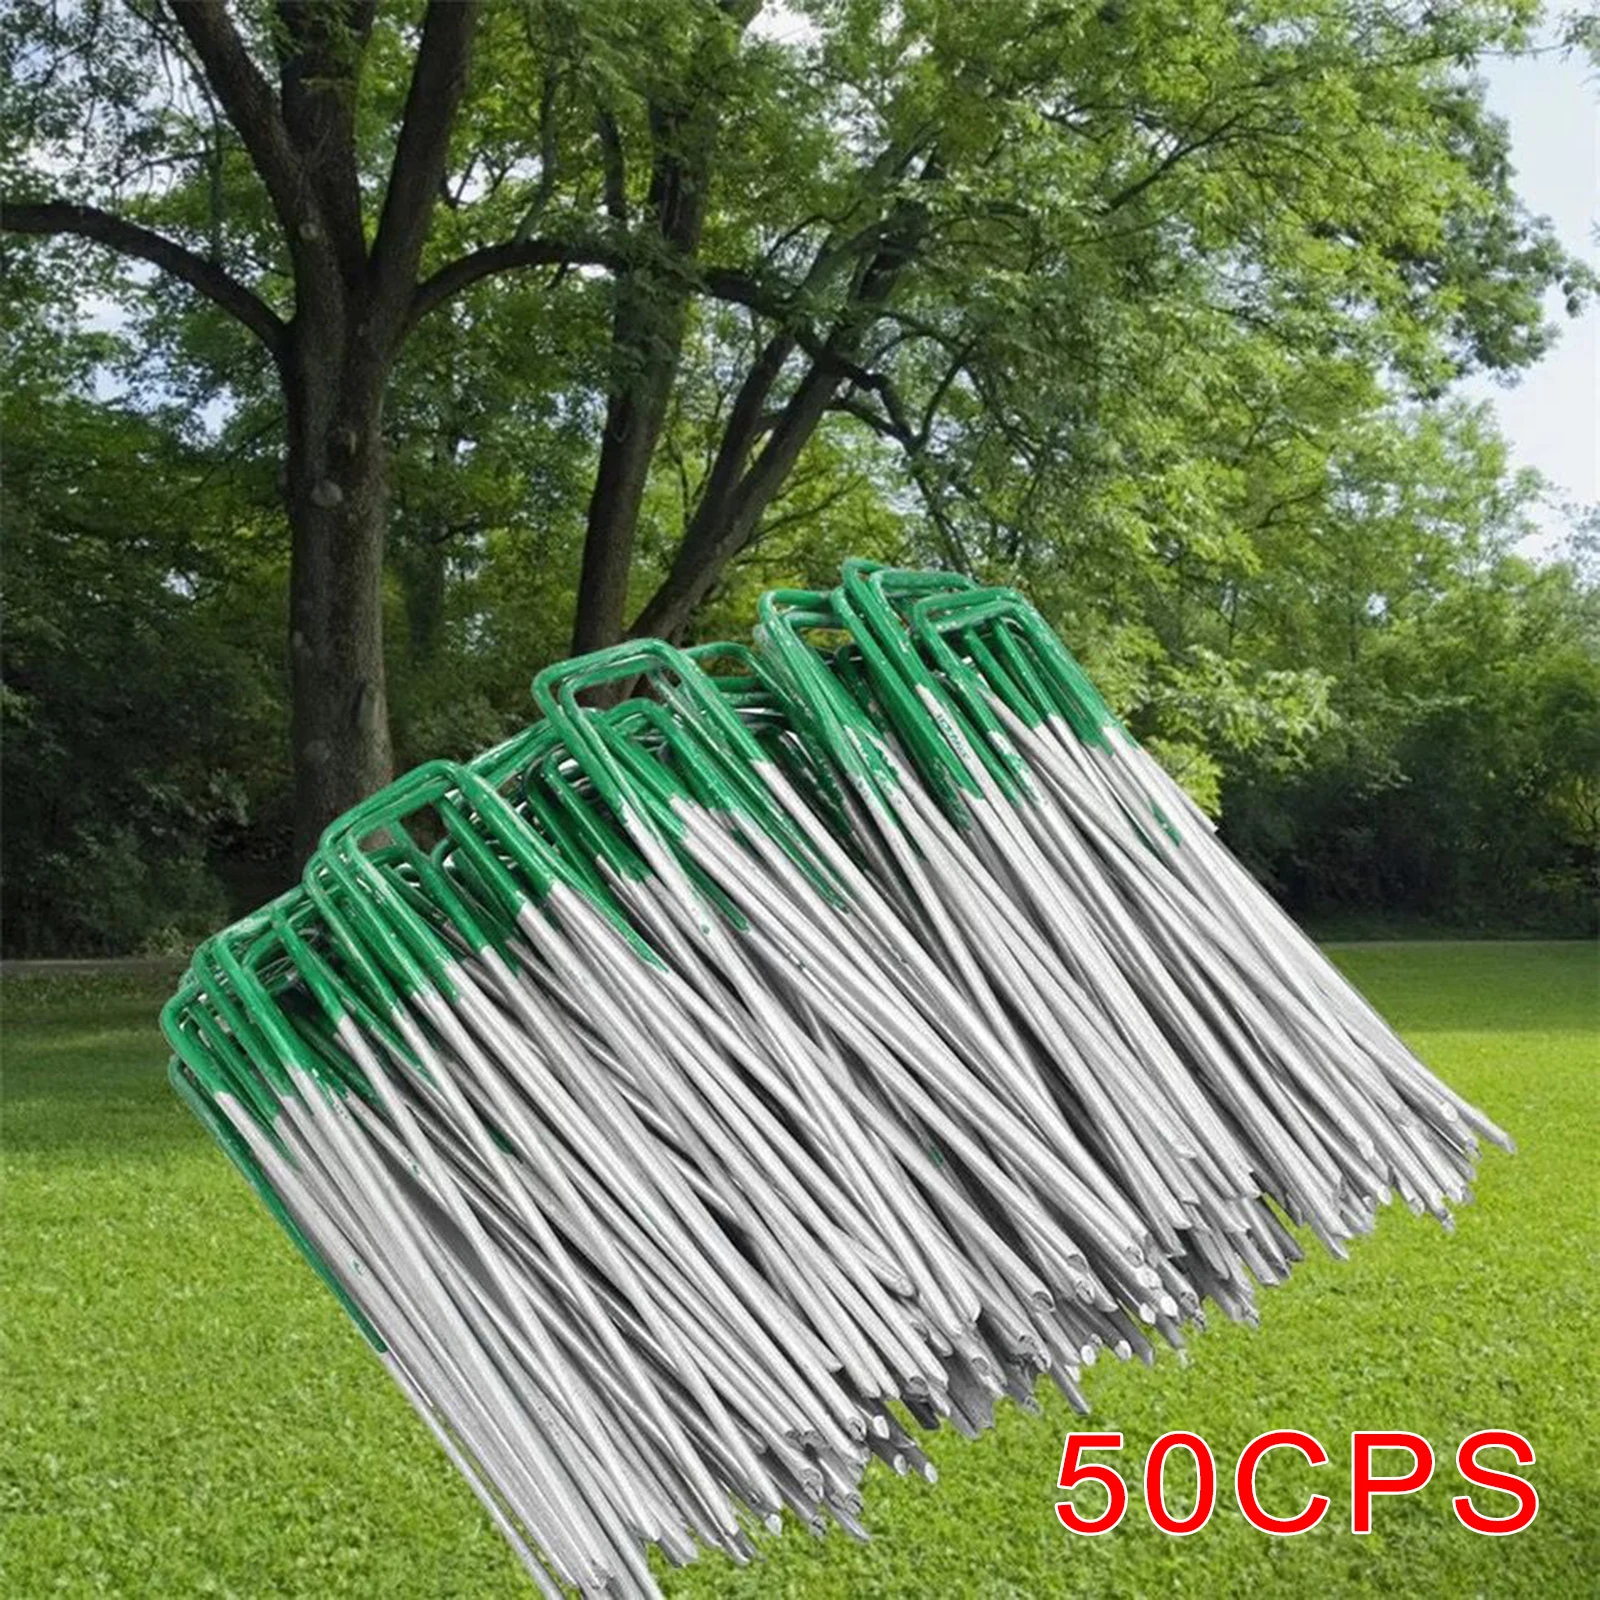 50 PCS U-Type Soil Nails Pens Landscape Staples Tent Stakes Tool